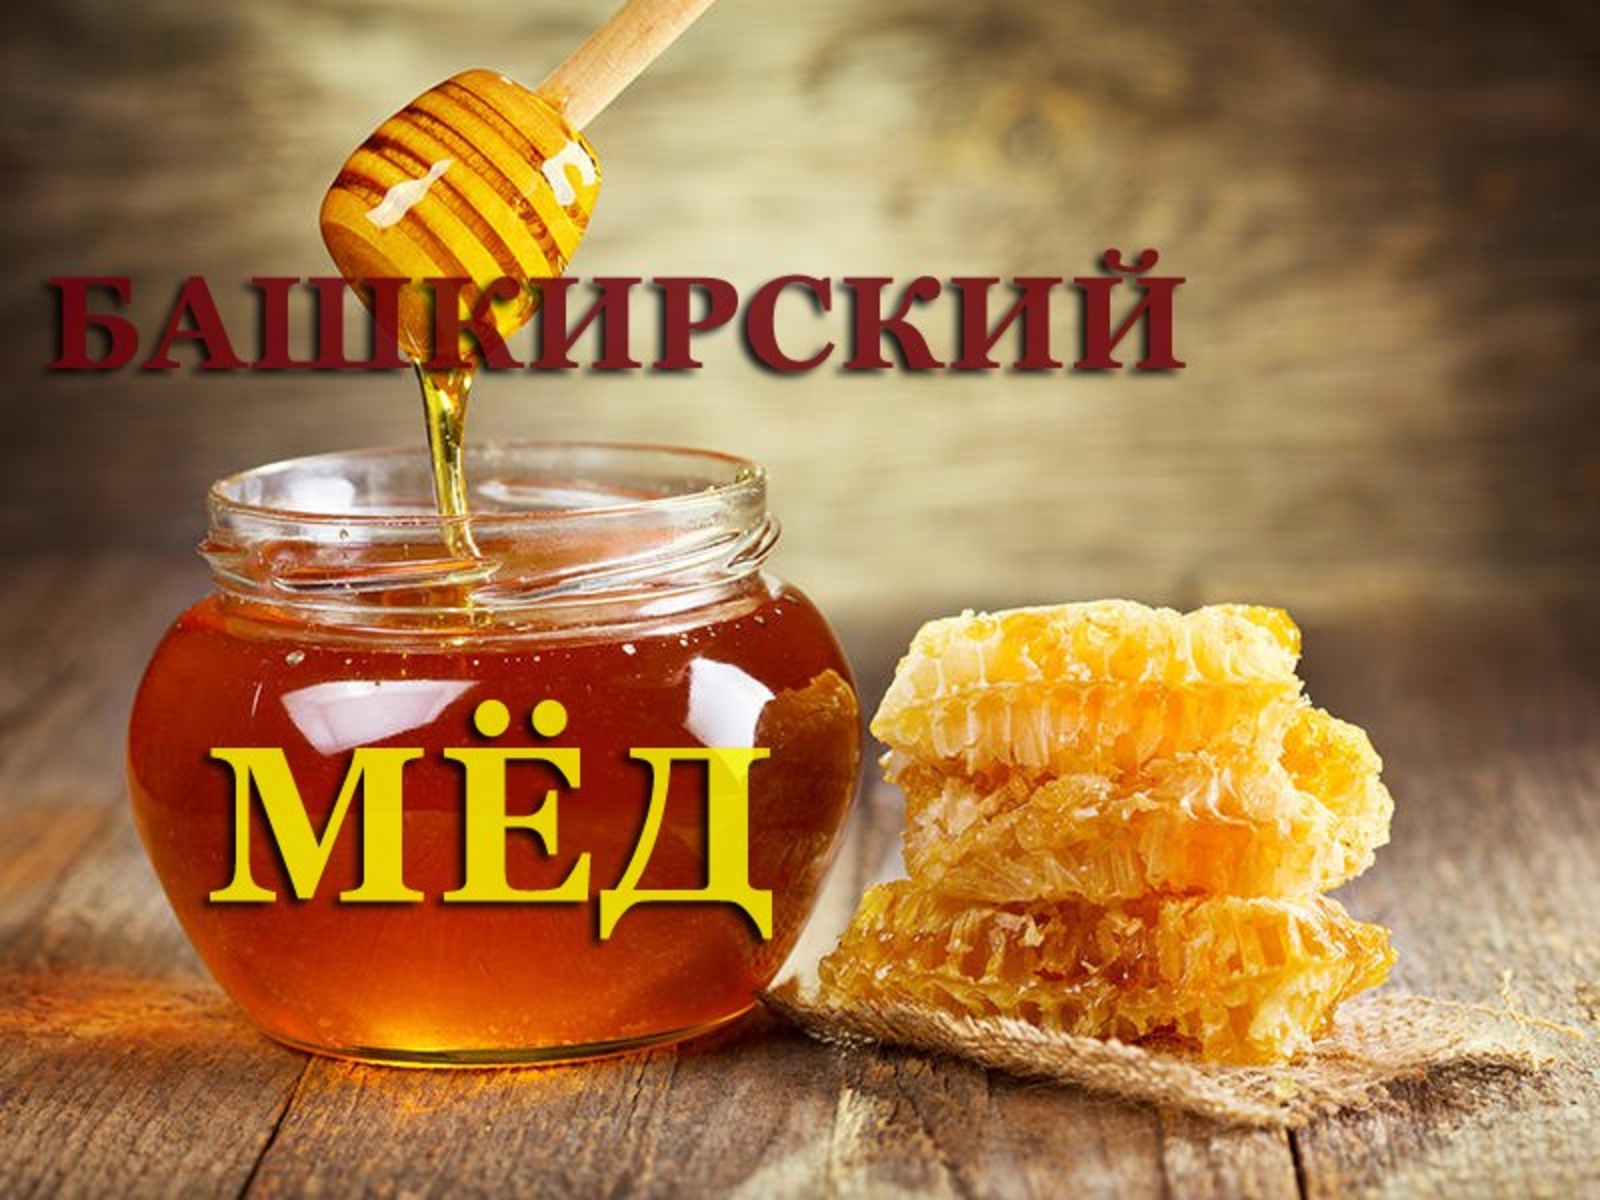 Башкирский мёд оценят в Сербии